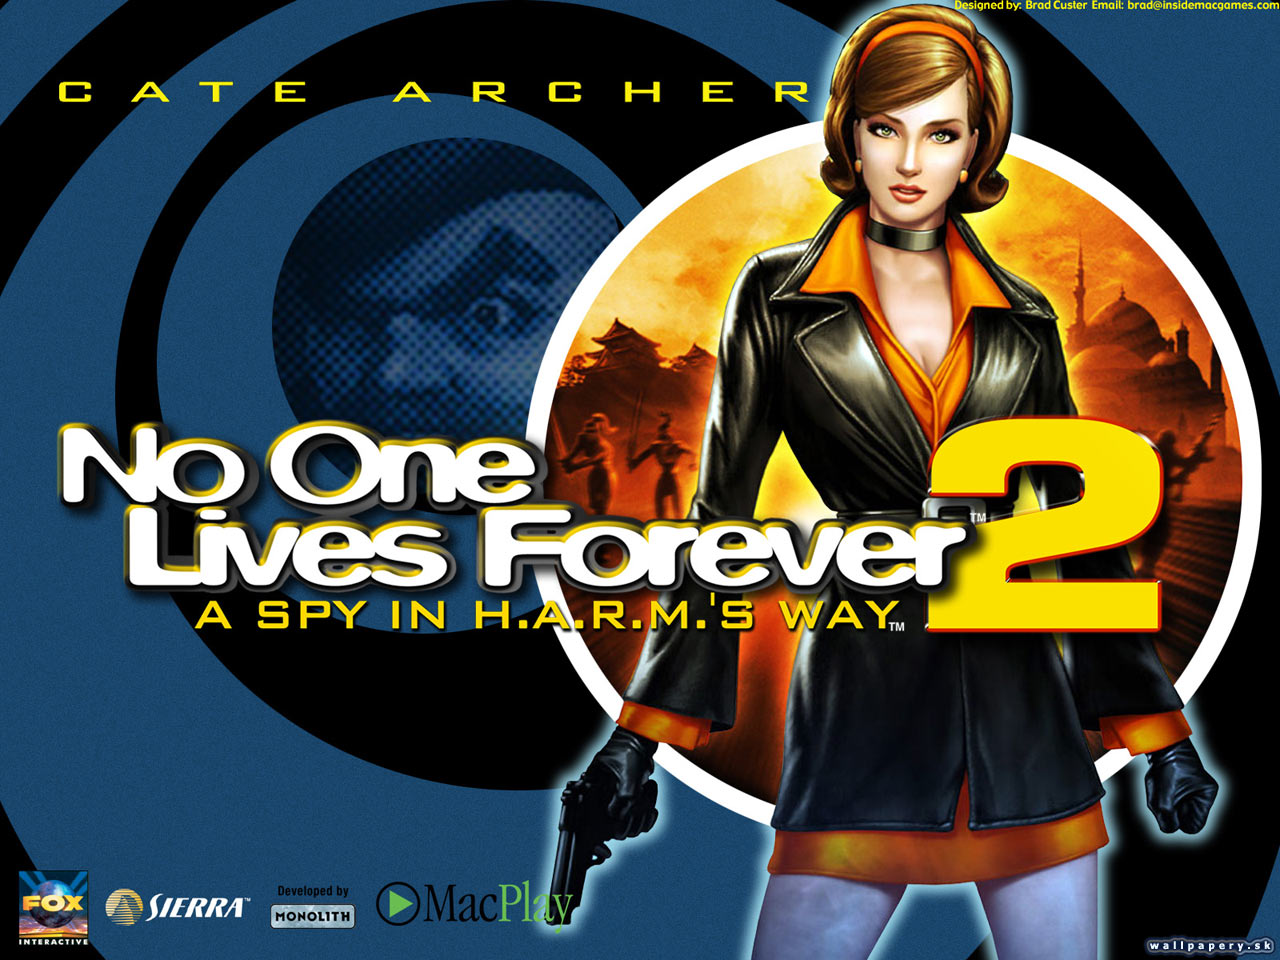 Lives de. No one Lives Forever 2 обложка. No one Lives Forever 2: a Spy in h.a.r.m.'s way обои. No one Lives Forever 2 logo. The operative: no one Lives Forever обои.